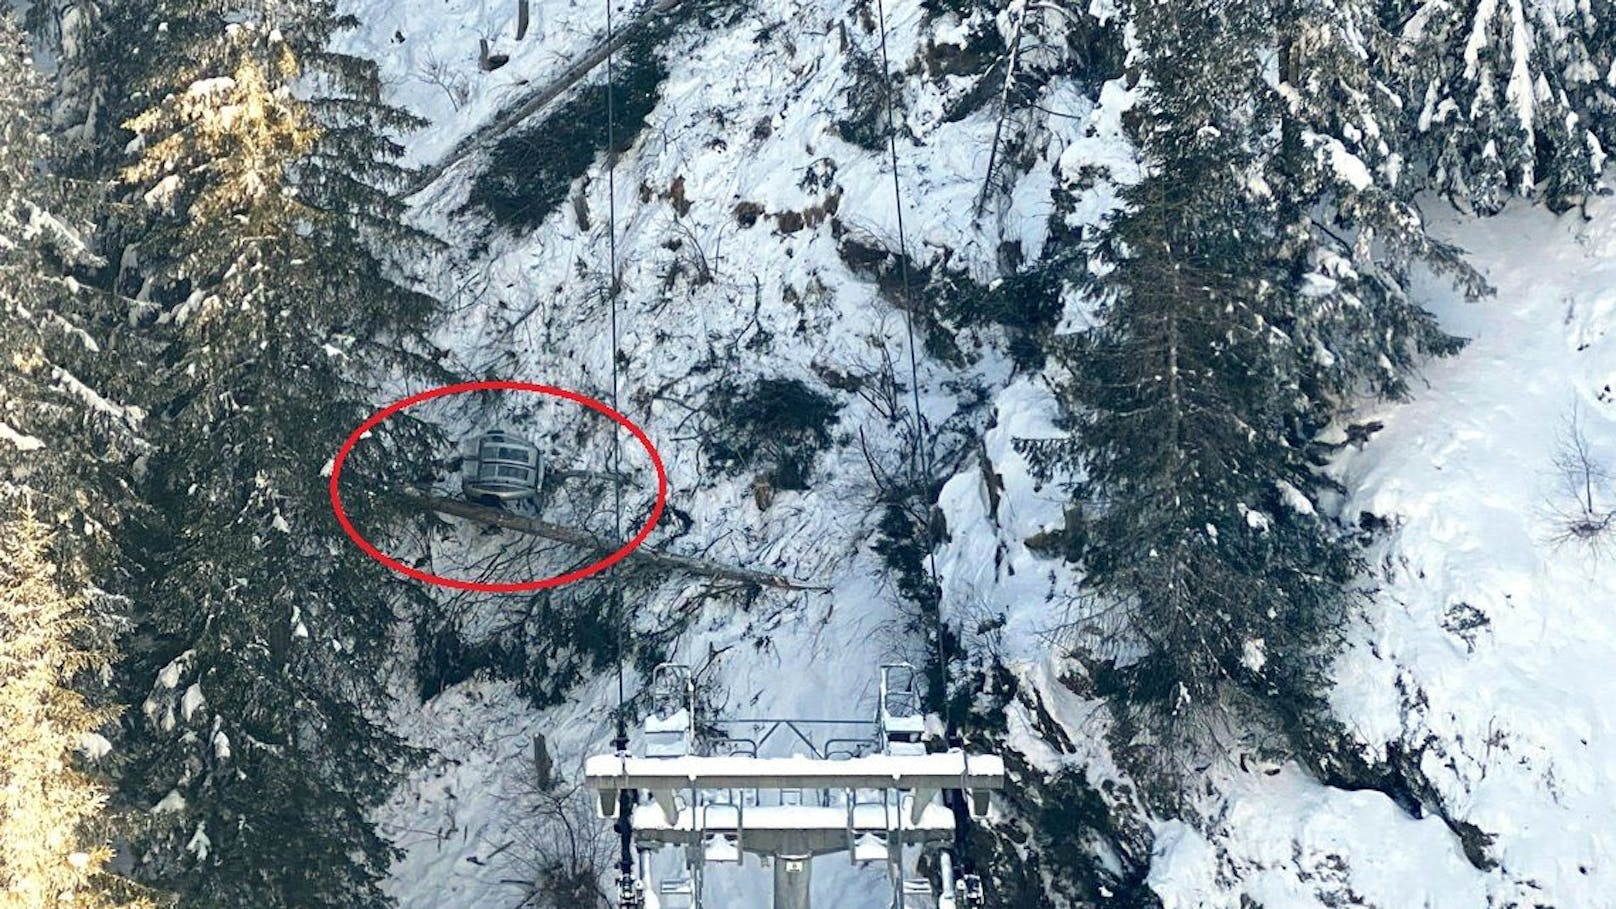 Fotos zeigen die abgestürzte Gondel in Tirol.